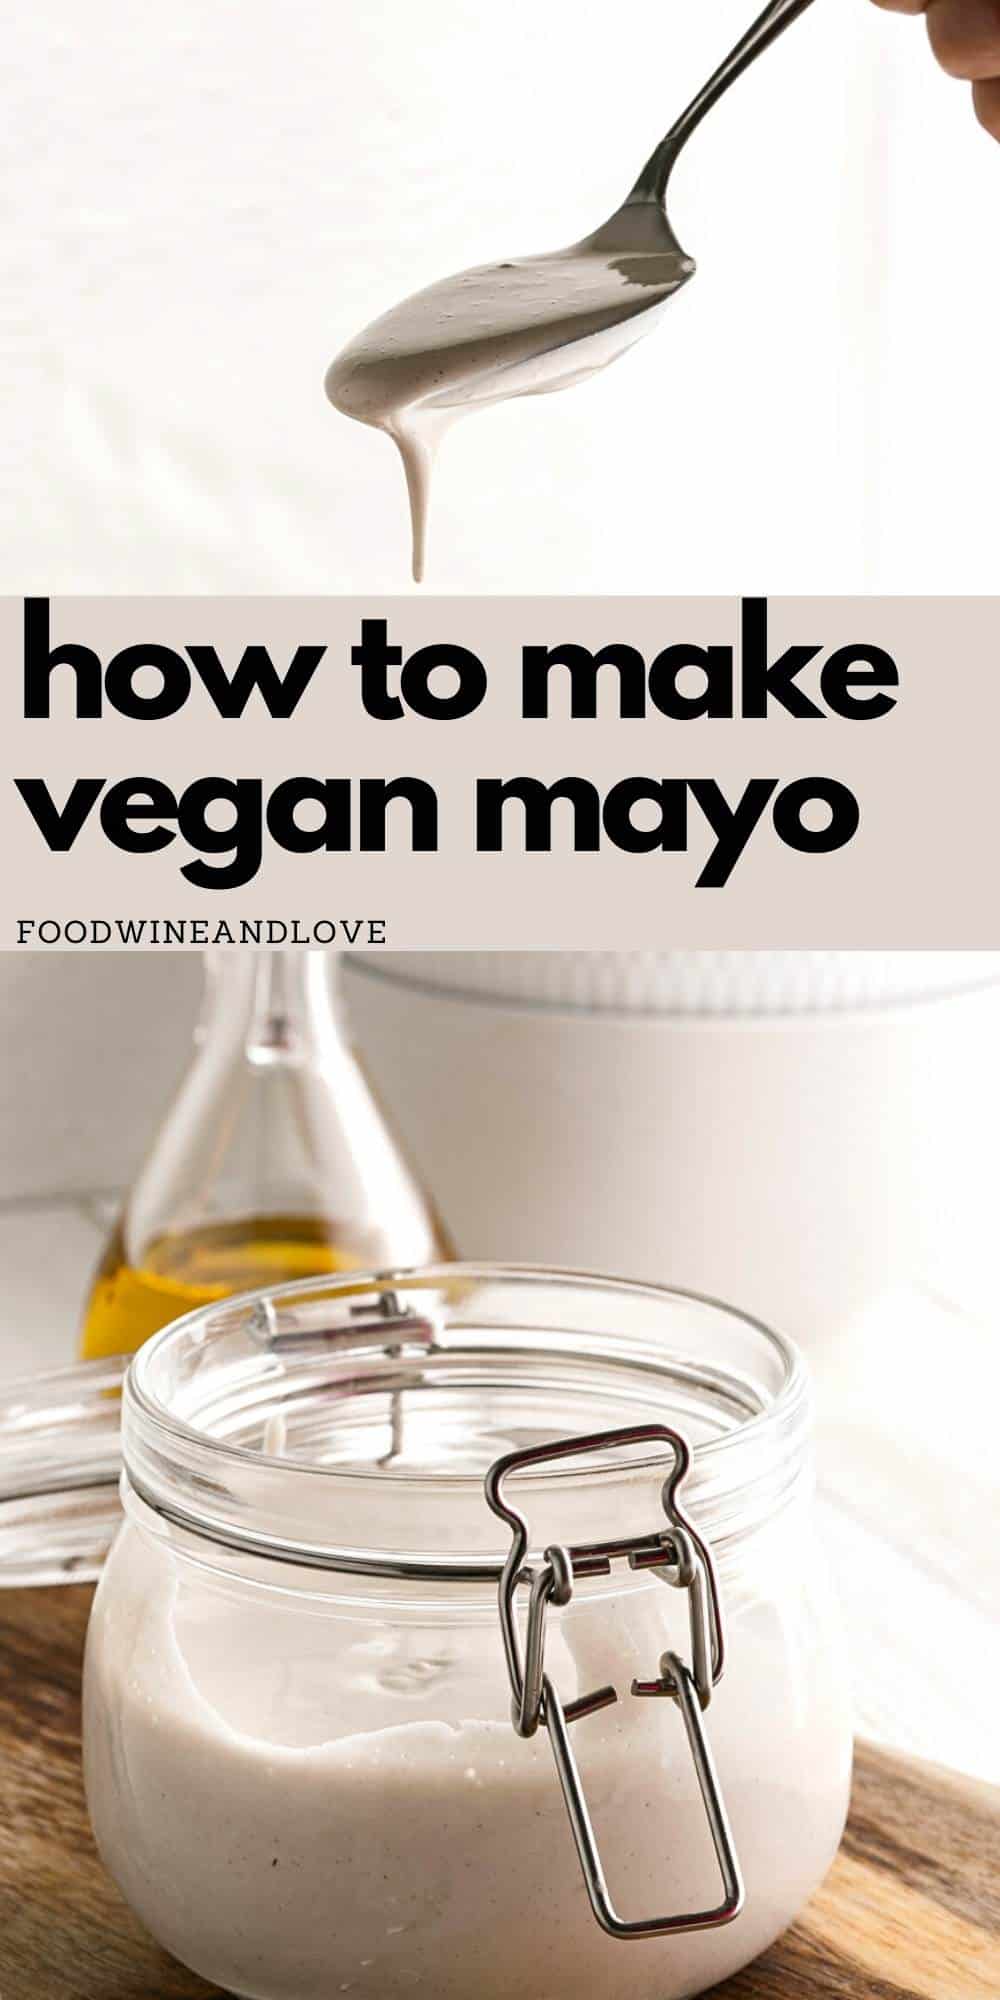 How to Make Vegan Mayo